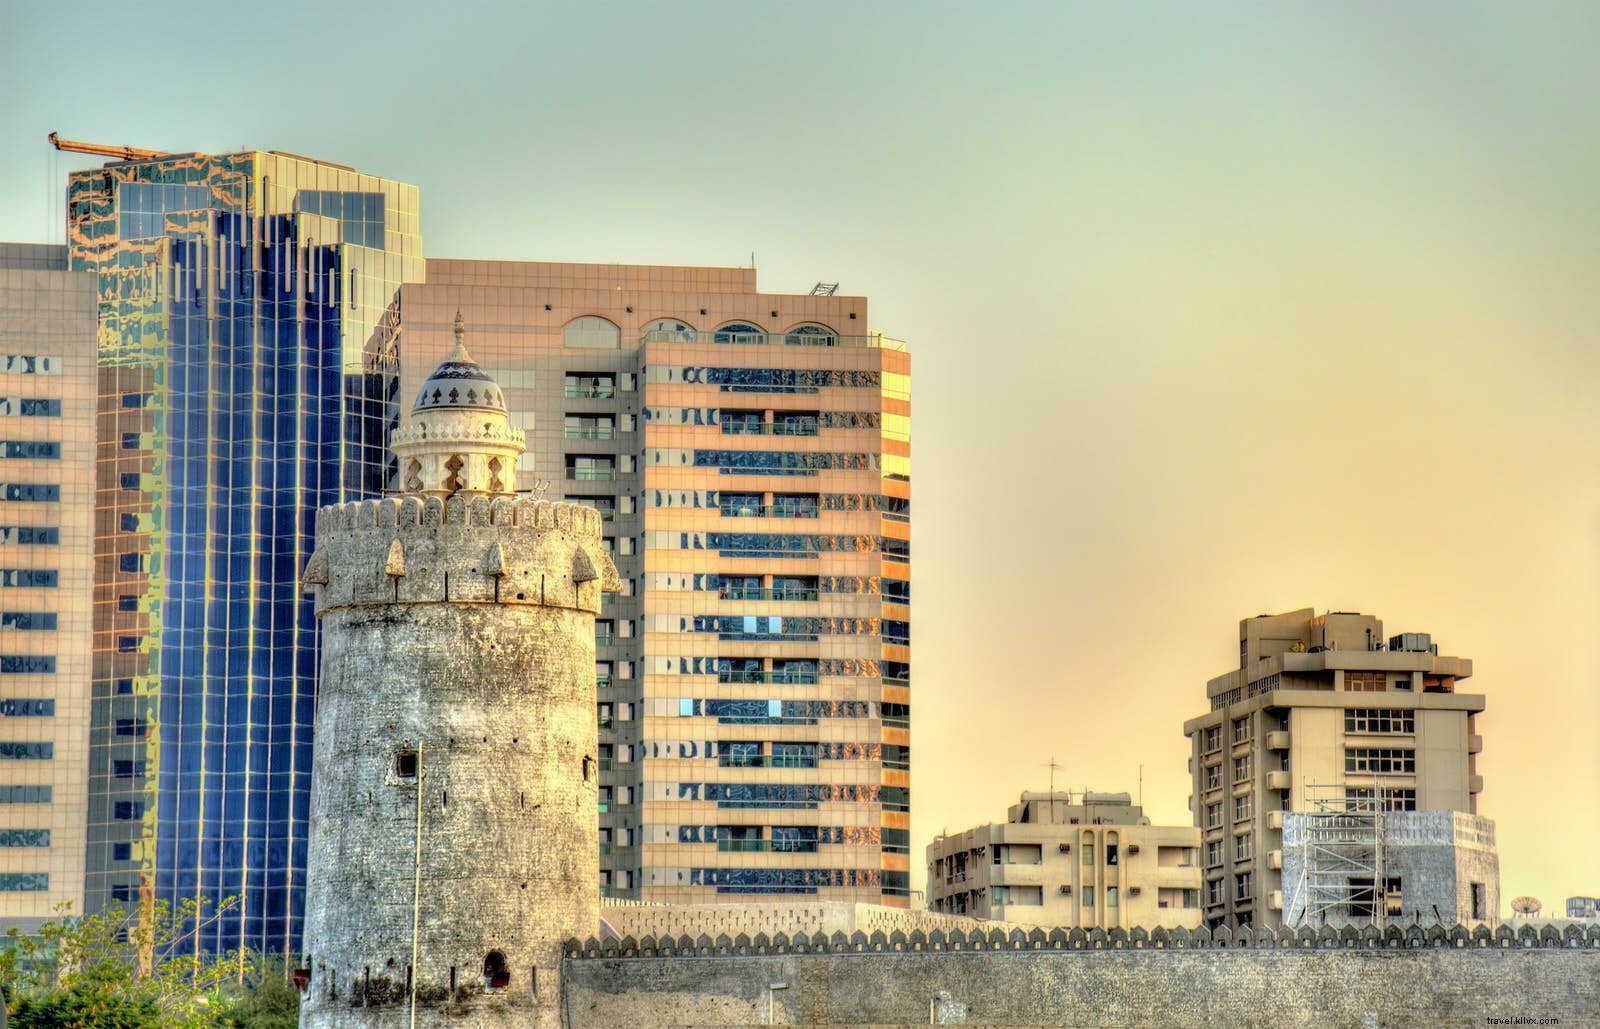 29 hal gratis yang dapat dilakukan di Abu Dhabi 